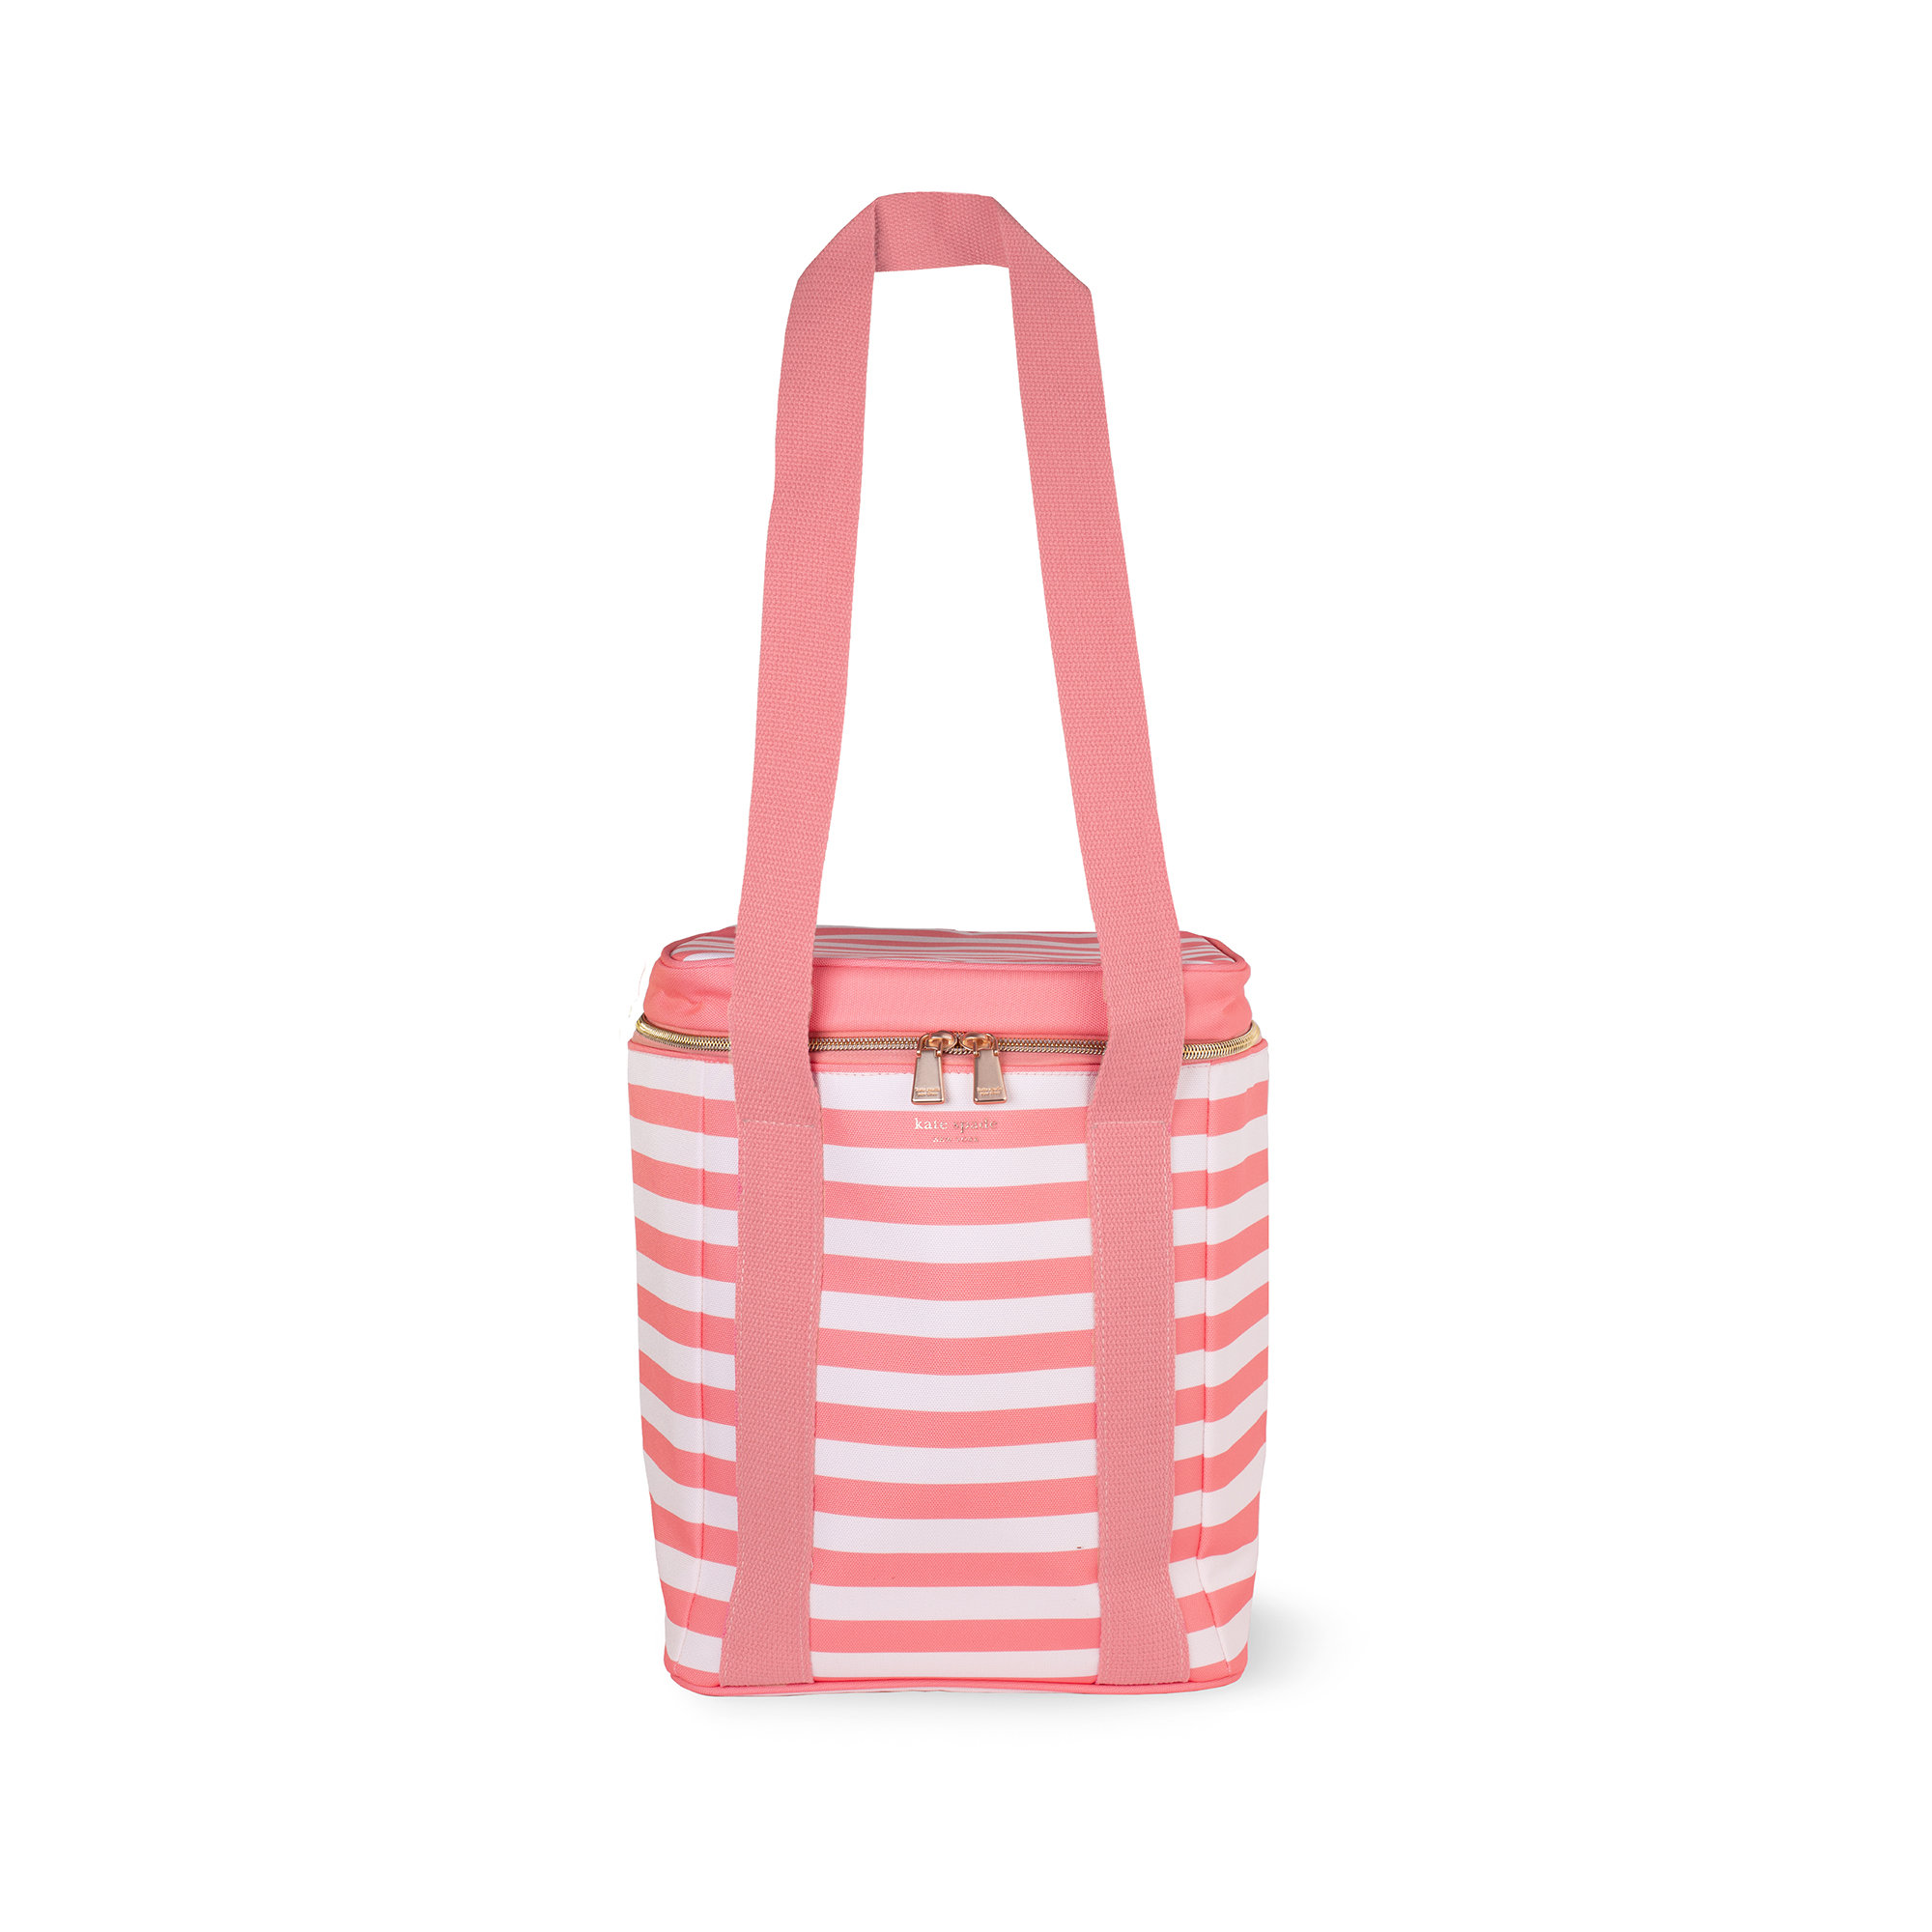 Small striped Kate Spade handbag. Petite and super... - Depop